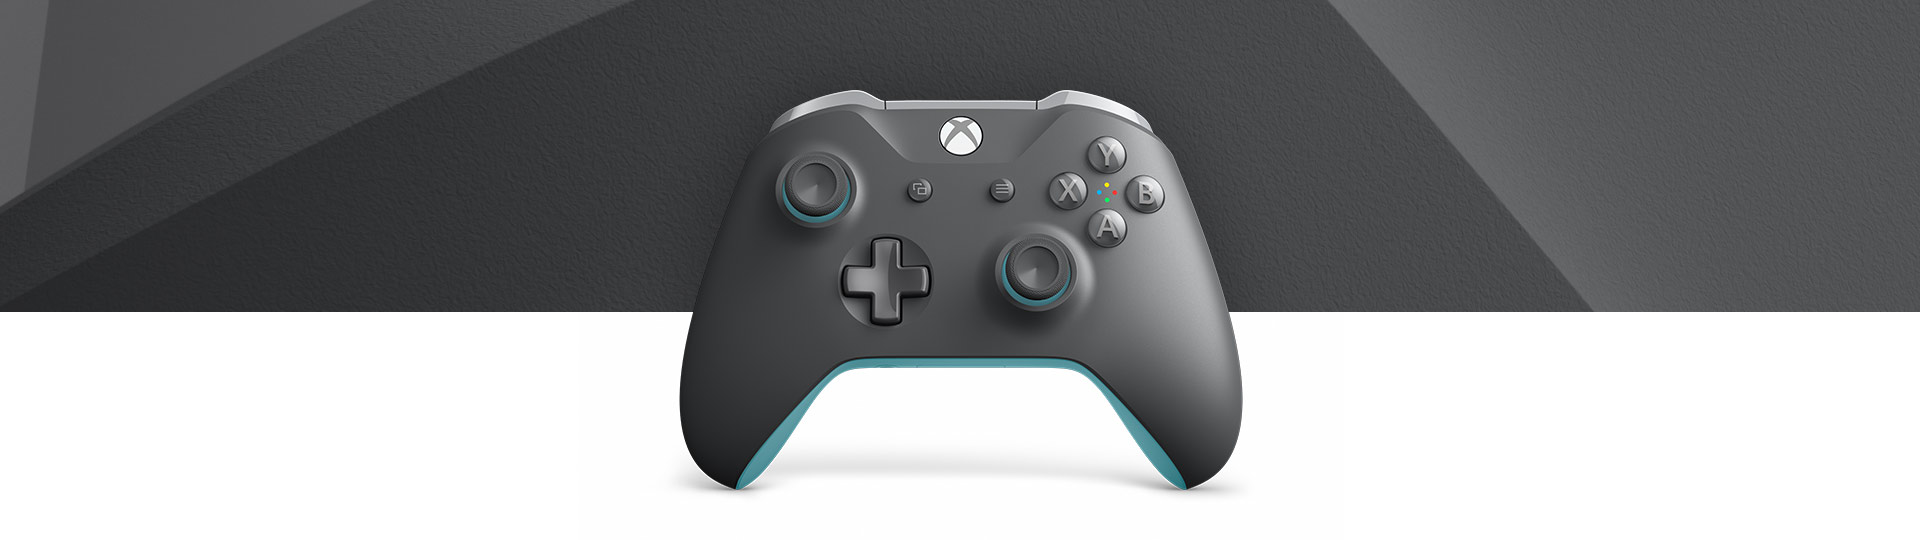 Draadloze Xbox-controller grijs/blauw - vooraanzicht